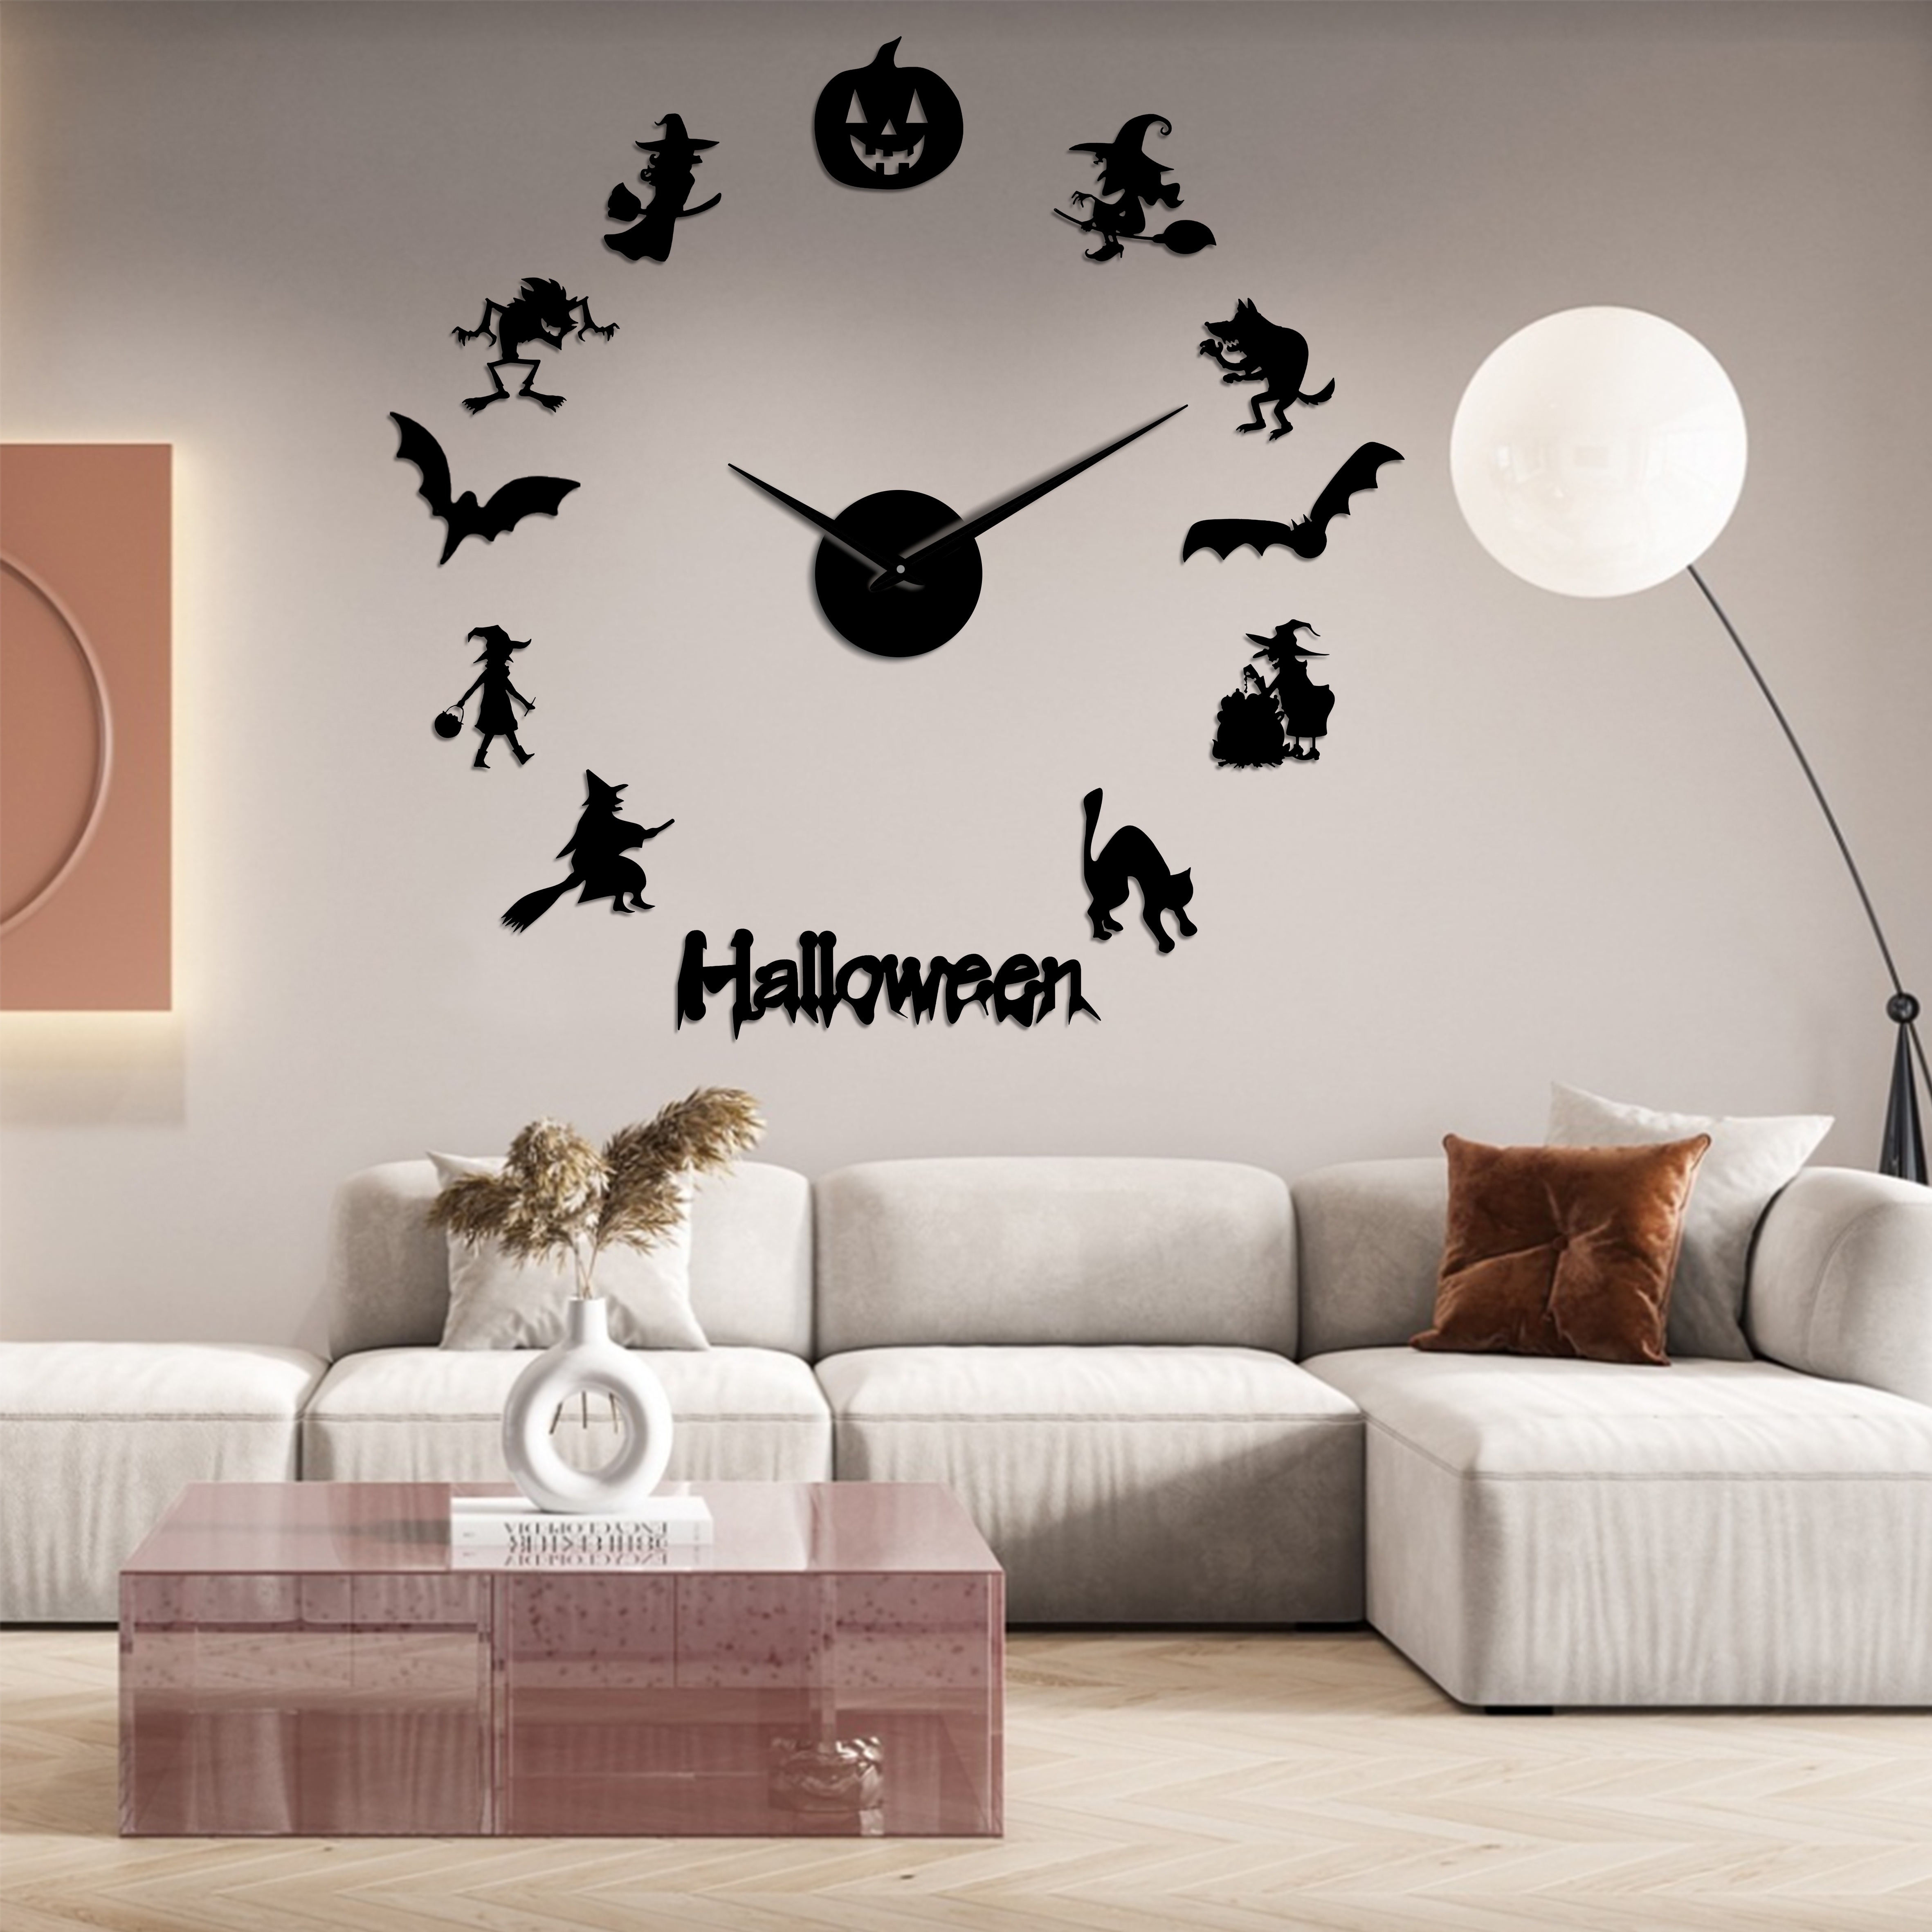 Reloj de pared moderno 3D sin marco, grande, 3D, bricolaje, relojes, horas,  decoraciones para el hogar, sala de estar, dormitorio (plata-rojo)